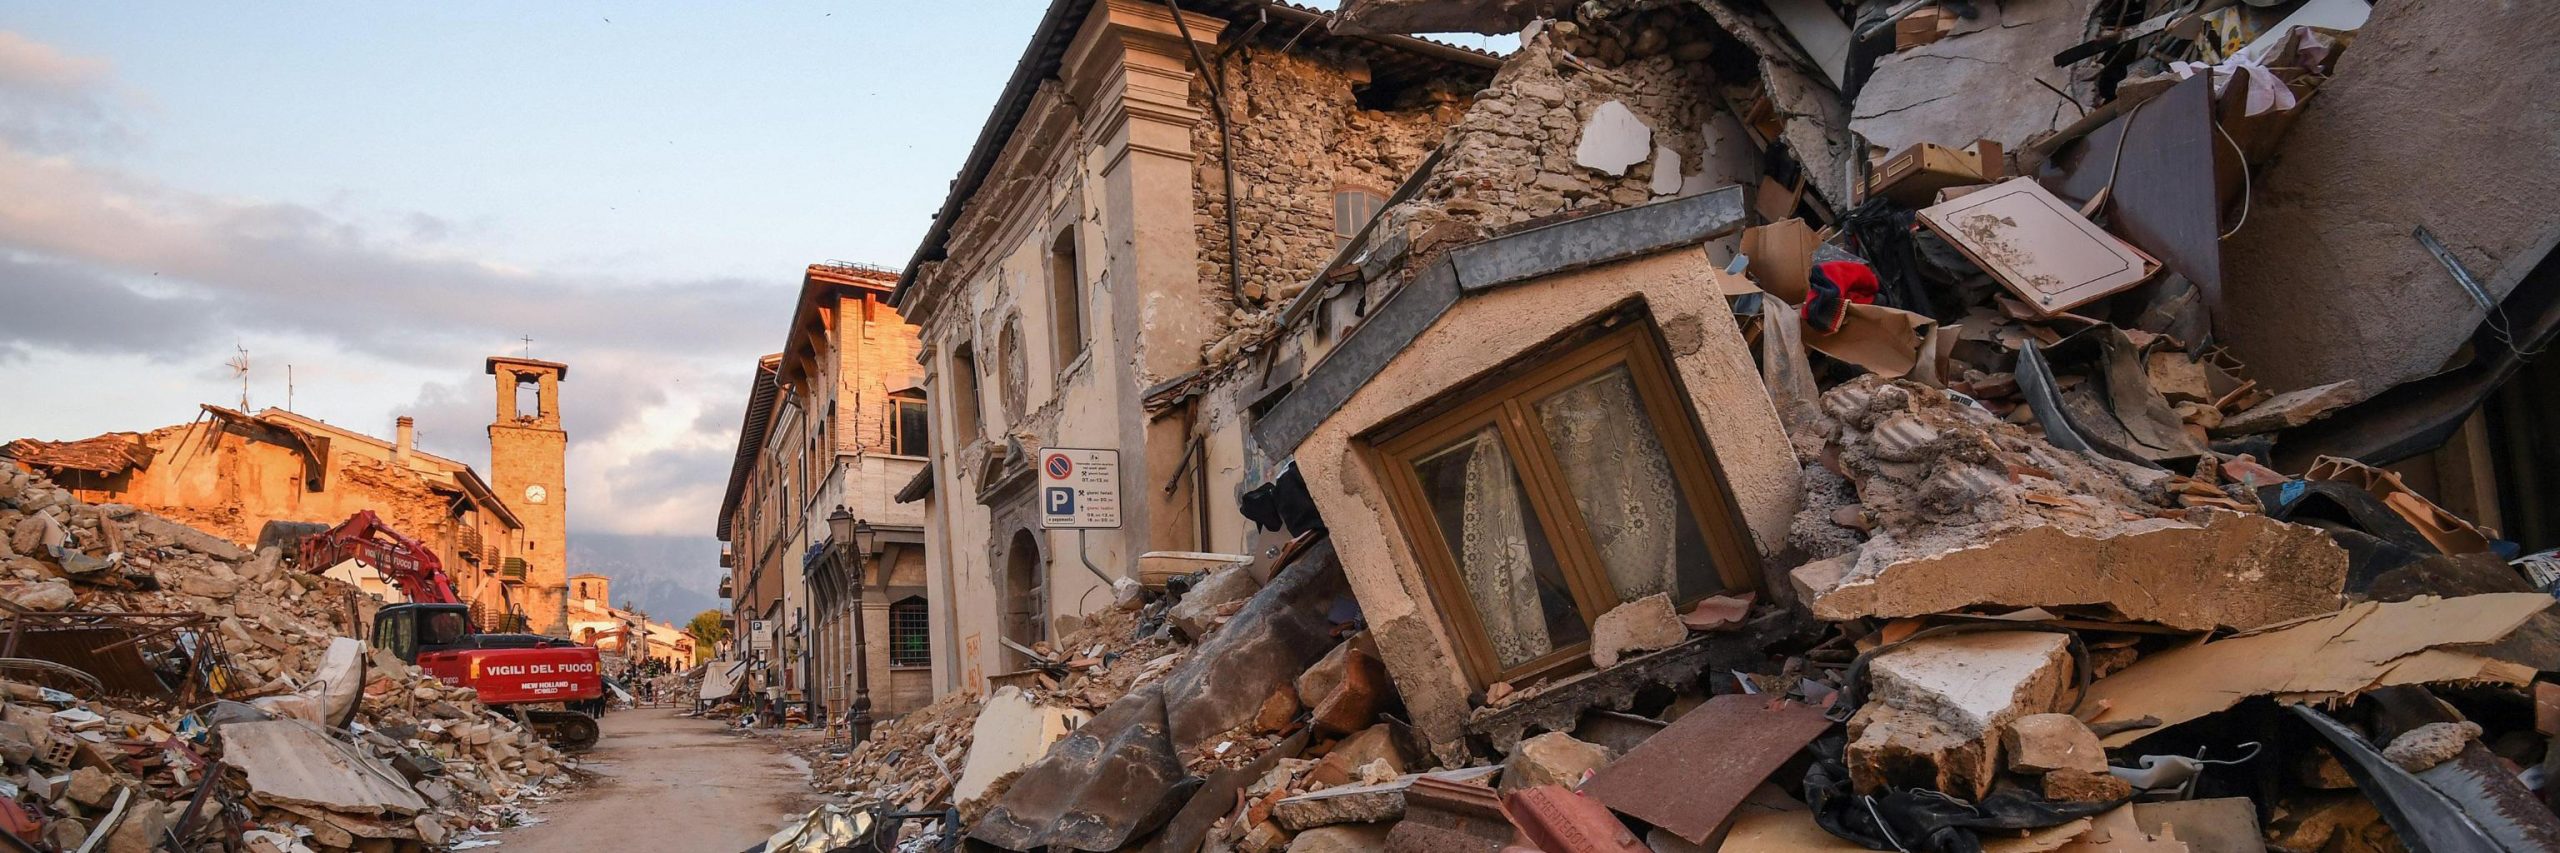 consegnati_i_fondi_per_amatrice_popoli_per_il_terremoto